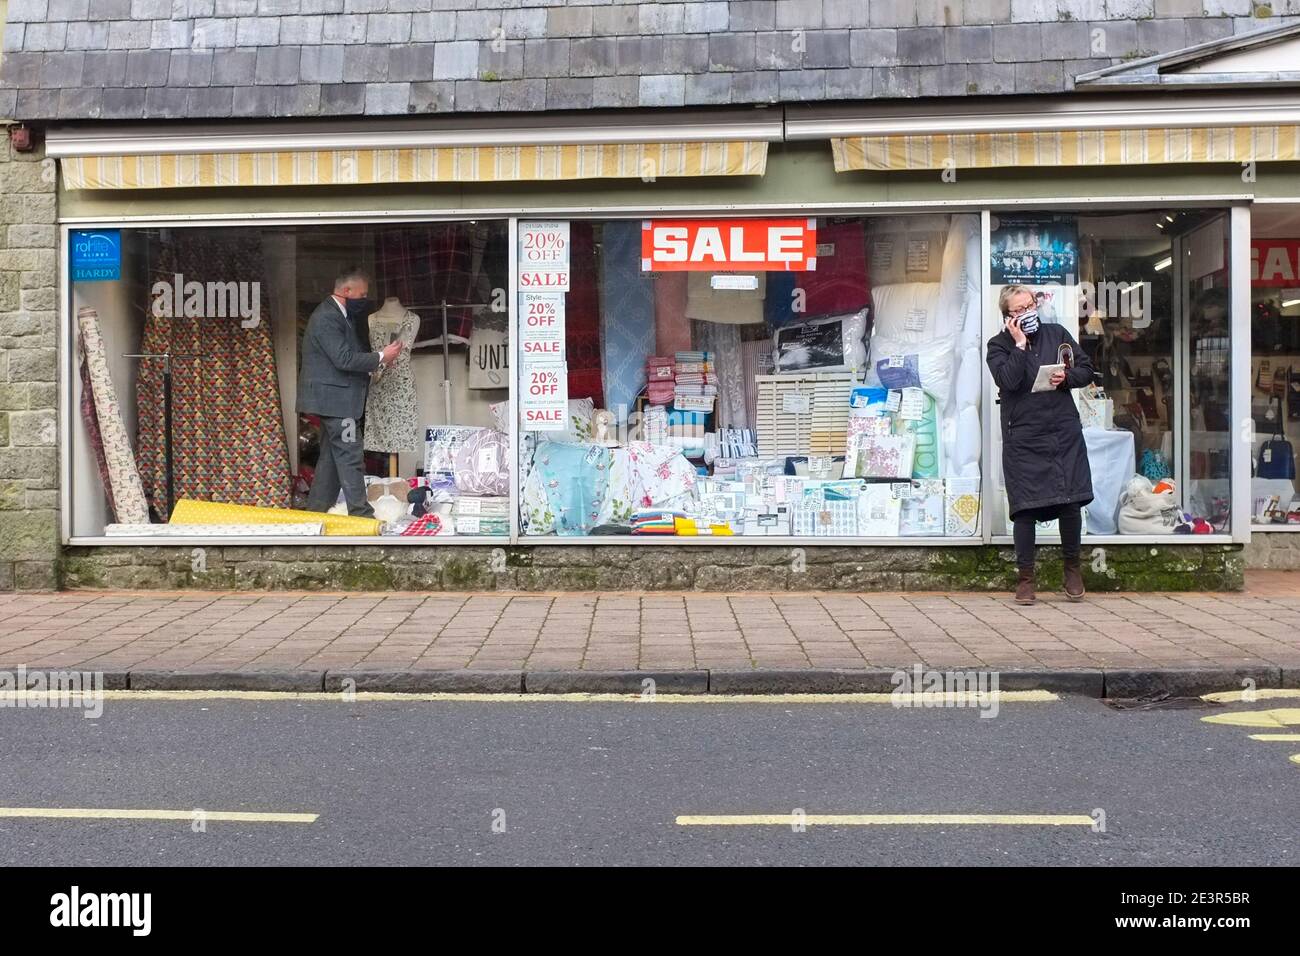 El Reino Unido se atiene a las restricciones de coronavirus. Un comprador enmascarado fuera de una tienda donde un asistente enmascarado está preparando la ventana de venta. Diciembre de 2020. Foto de stock